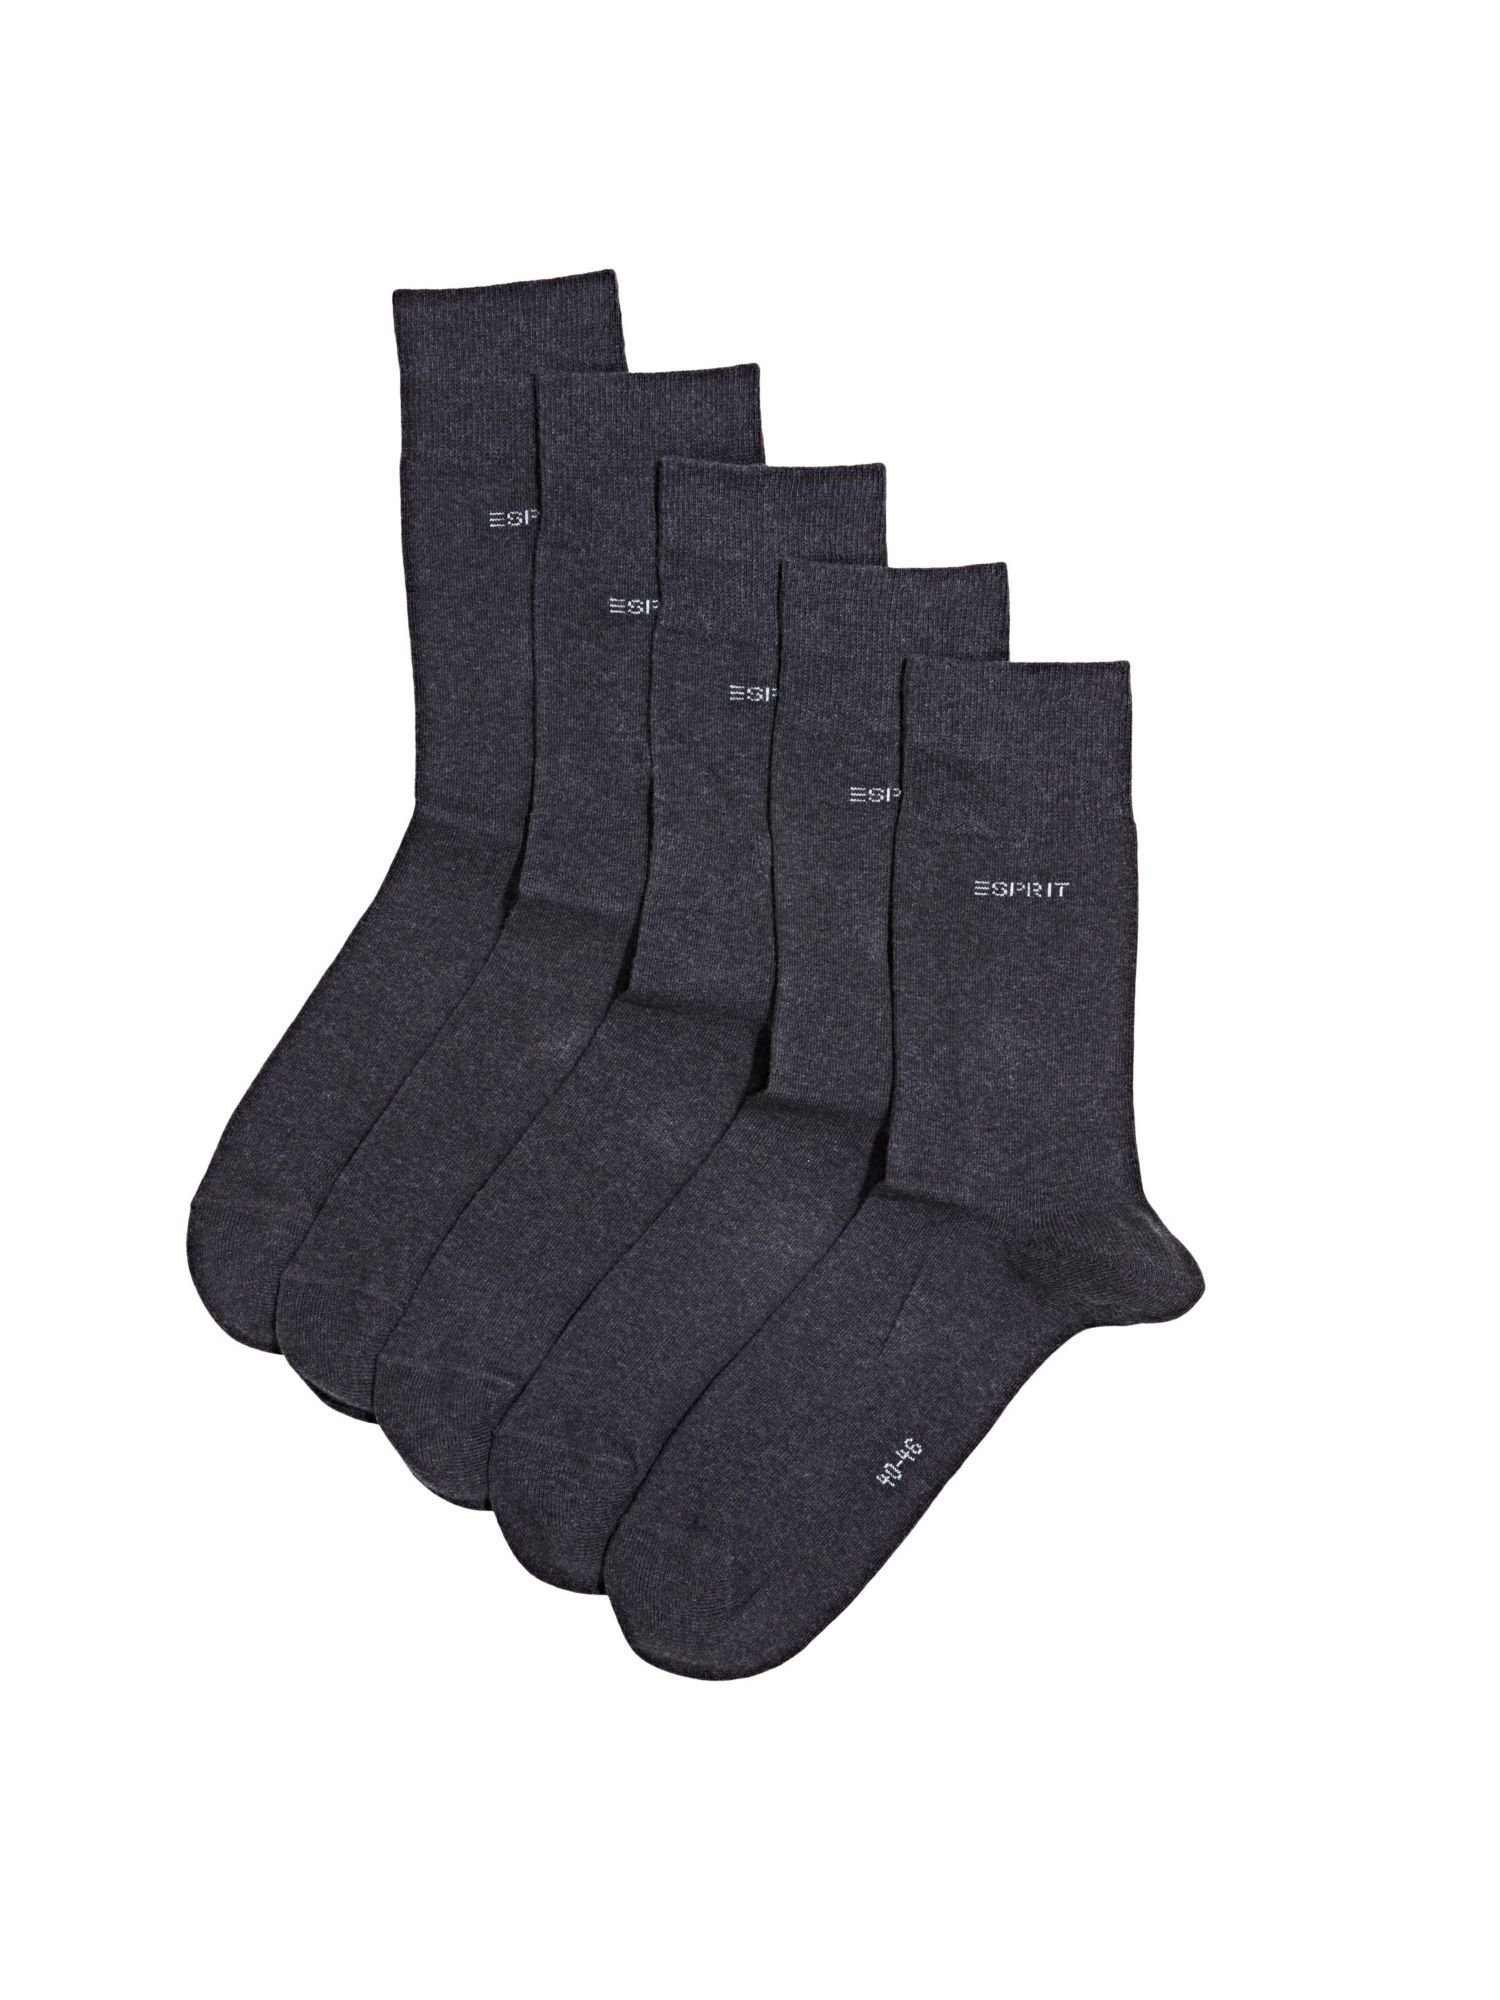 MELANGE ANTHRACITE 5er-Pack Esprit Socken Bio-Baumwollmix Socken,